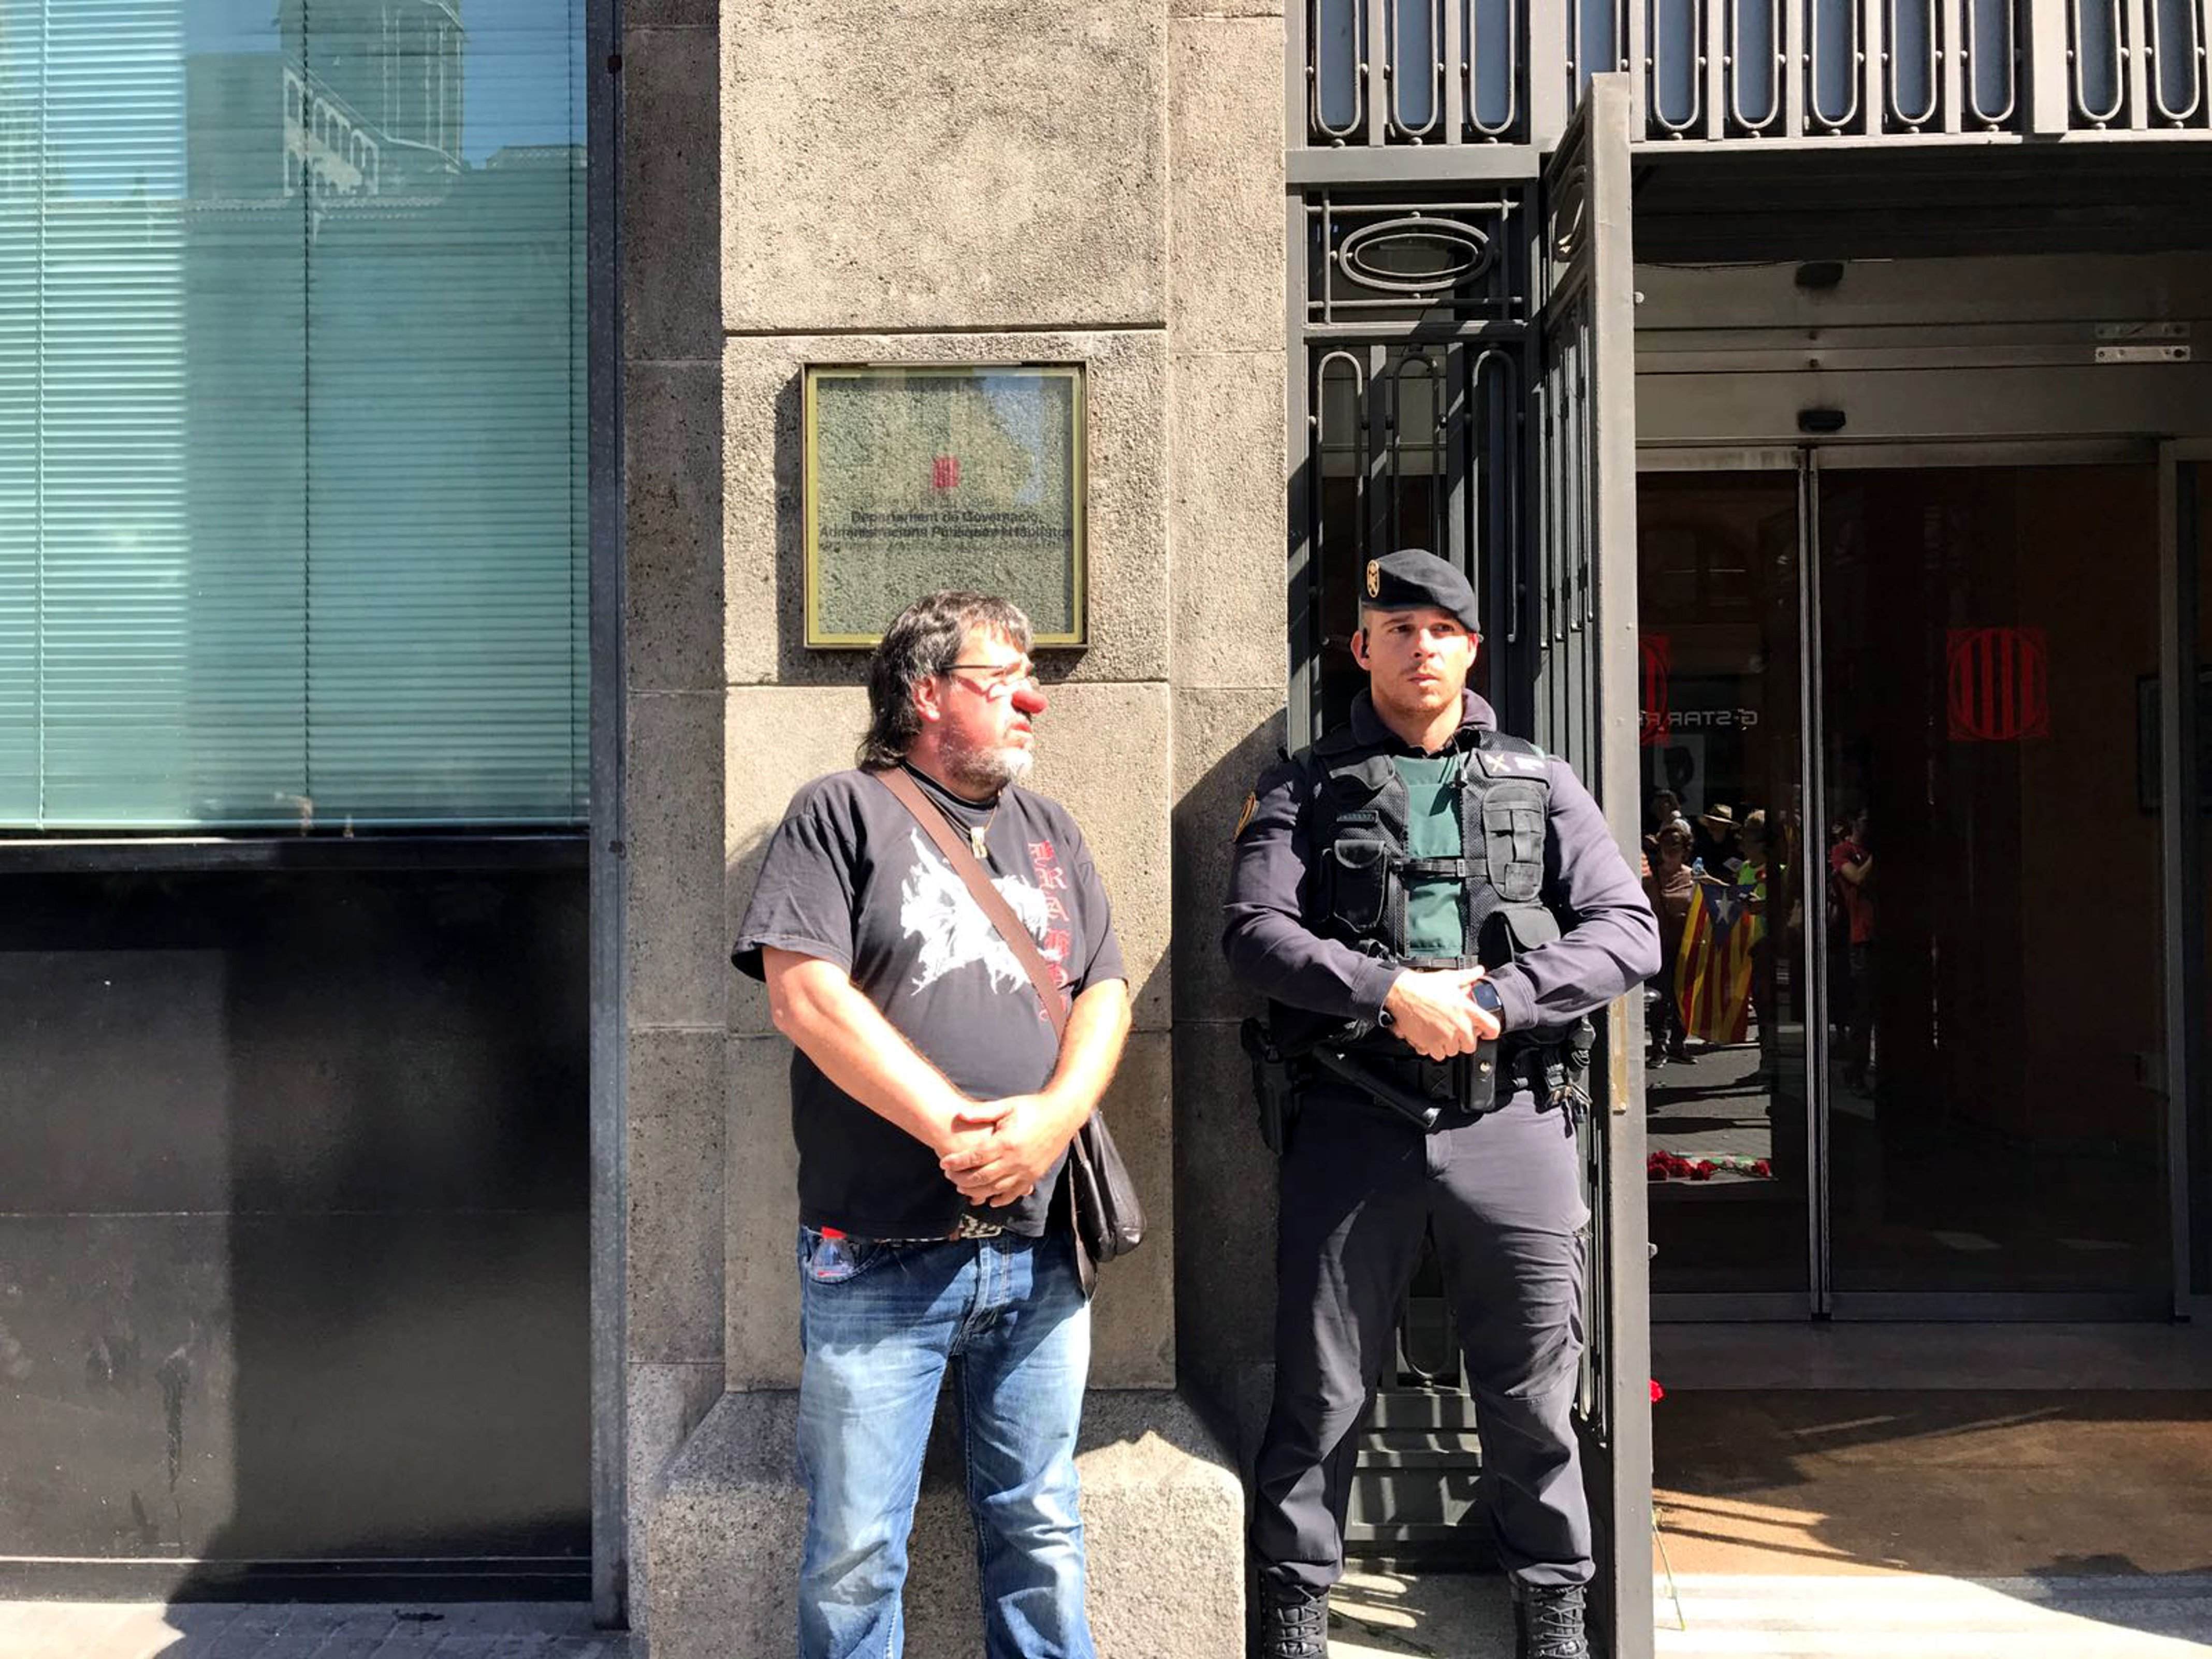 Jordi Pesarrodona, a judici per un delicte de desobediència greu